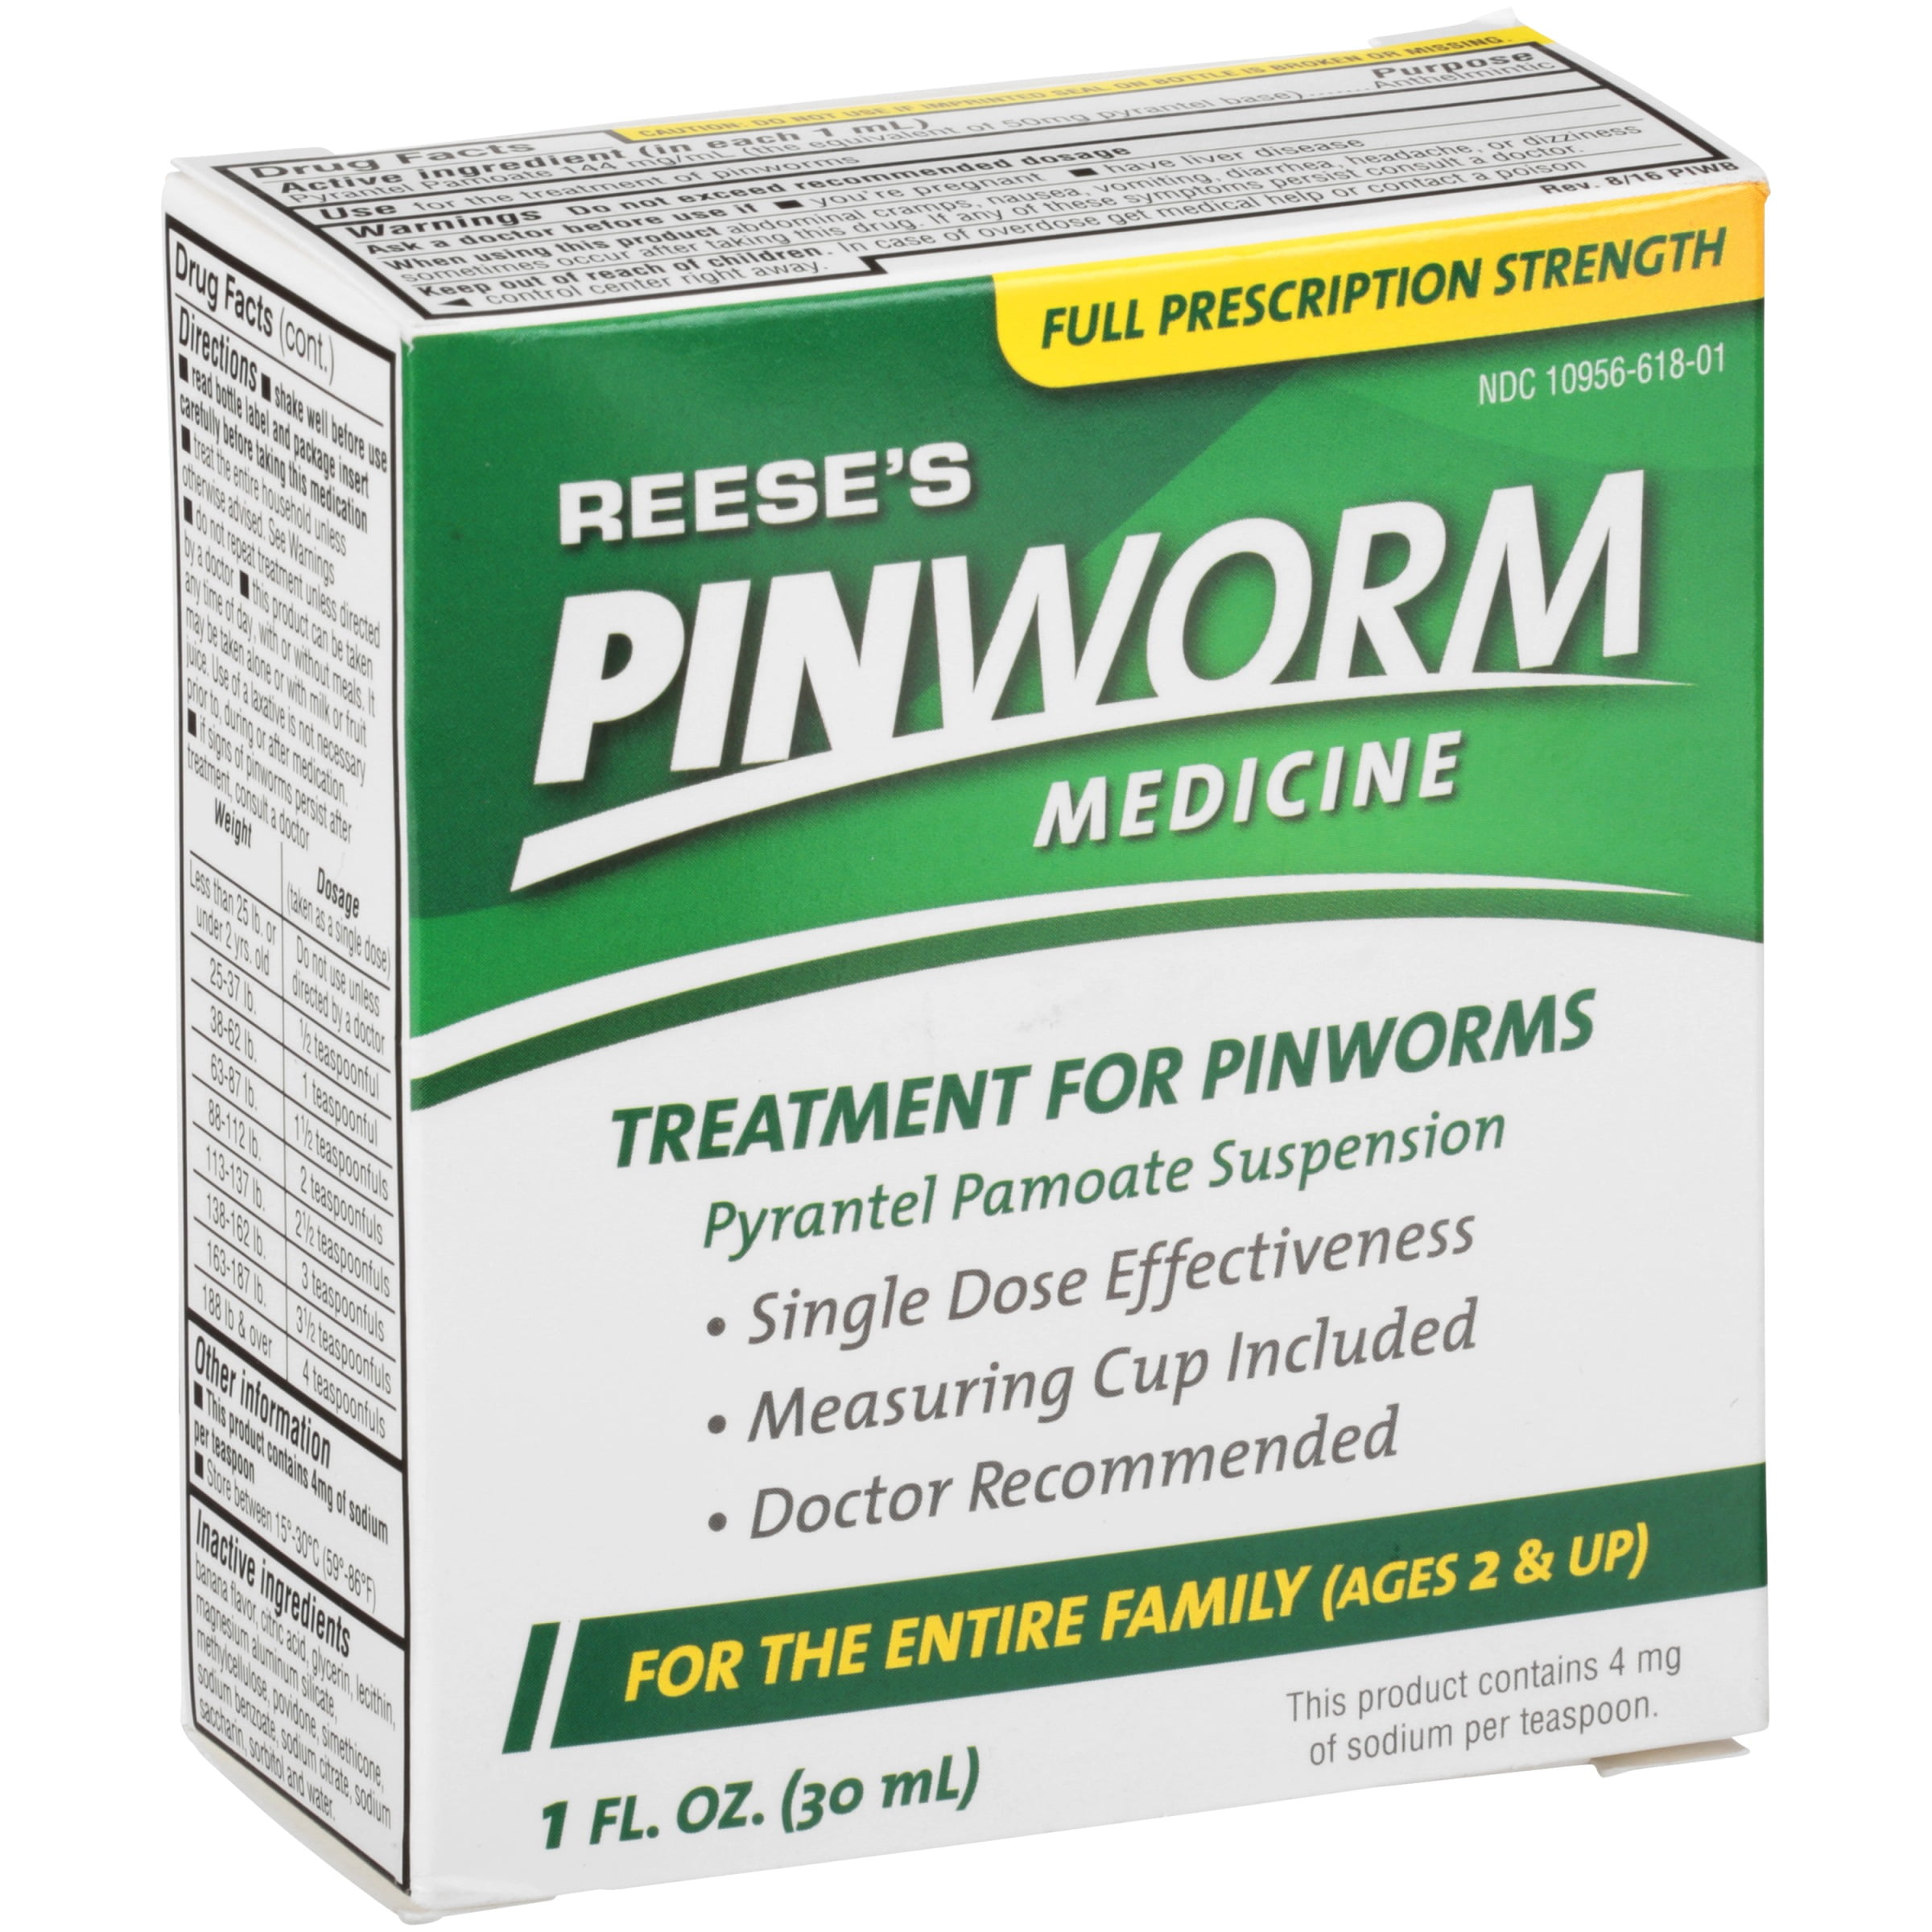 van pinworms